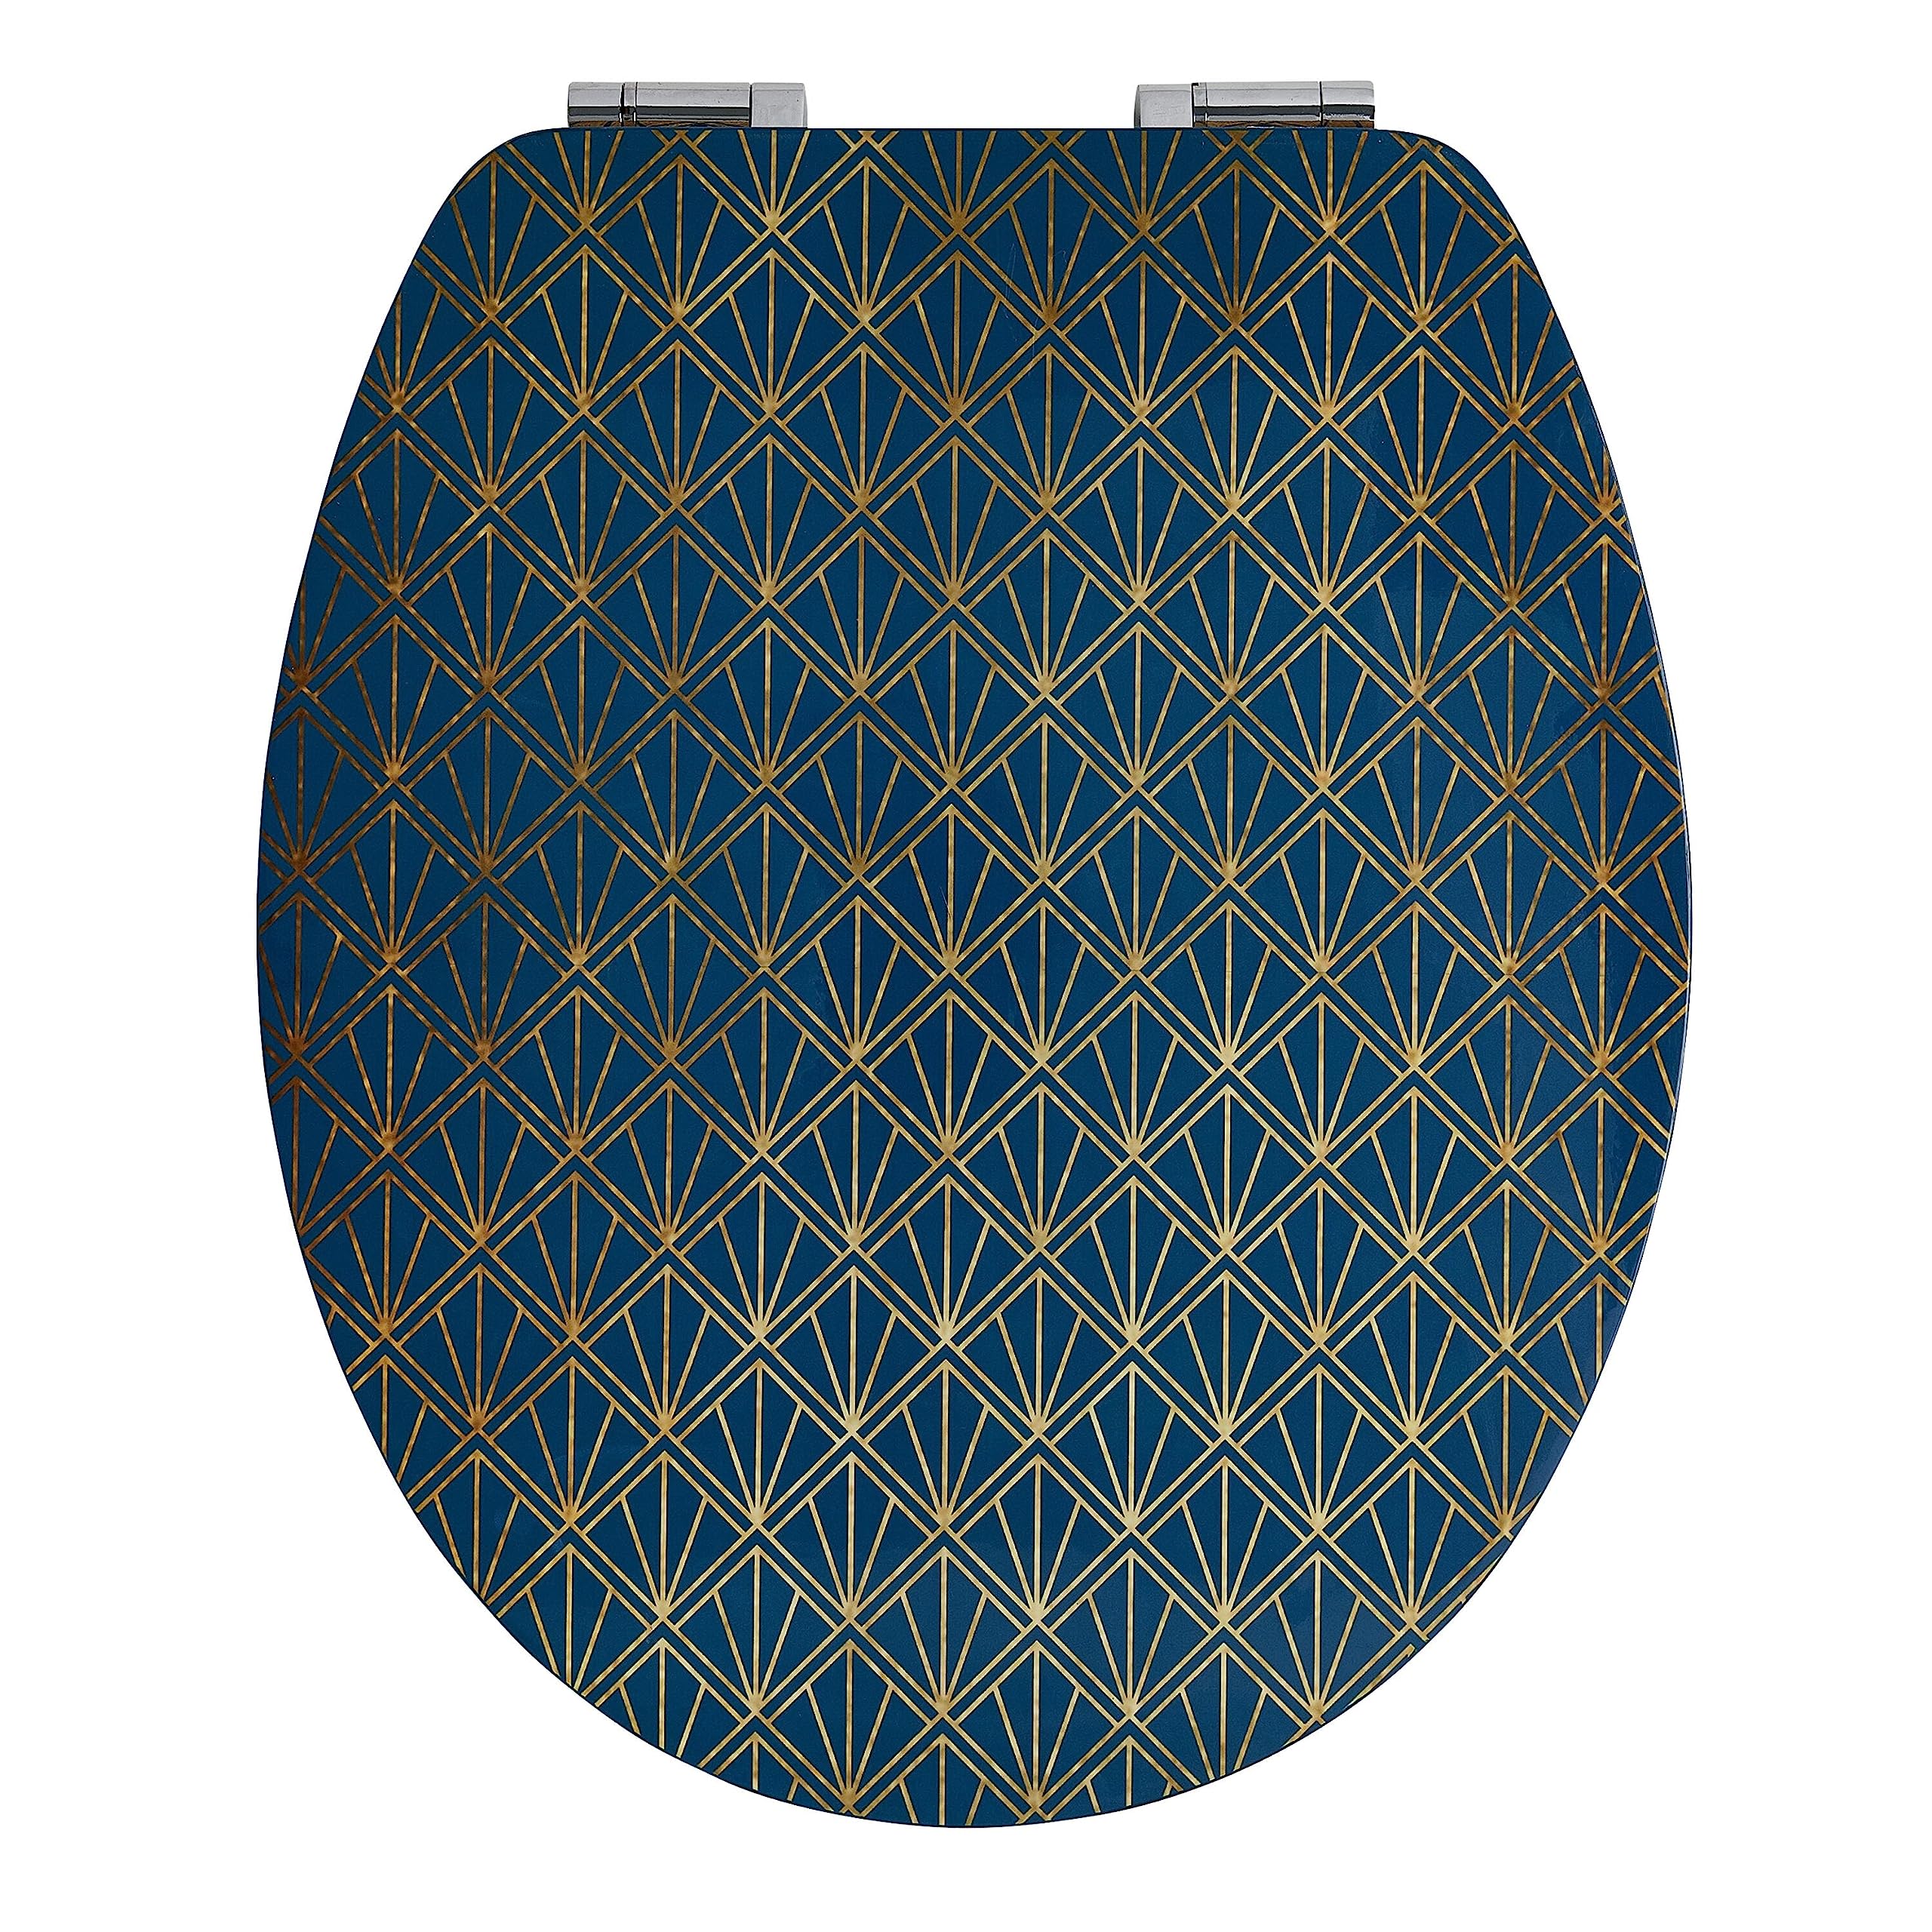 Wirquin 20722720 Trendy Line Diplomat Deckel, Art Deco Blue